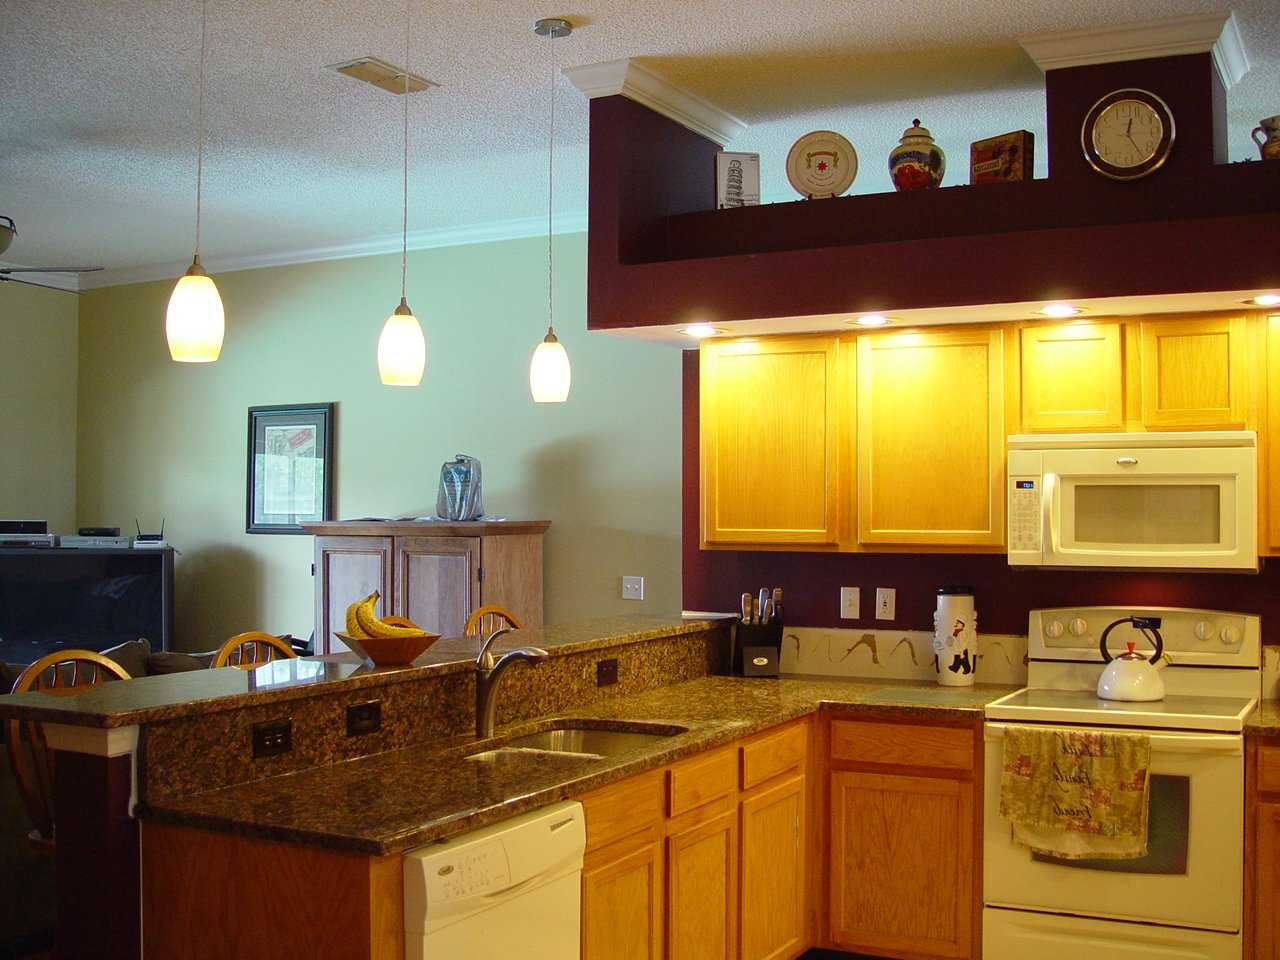 Как правильно организовать освещение на кухне: советы и рекомендации